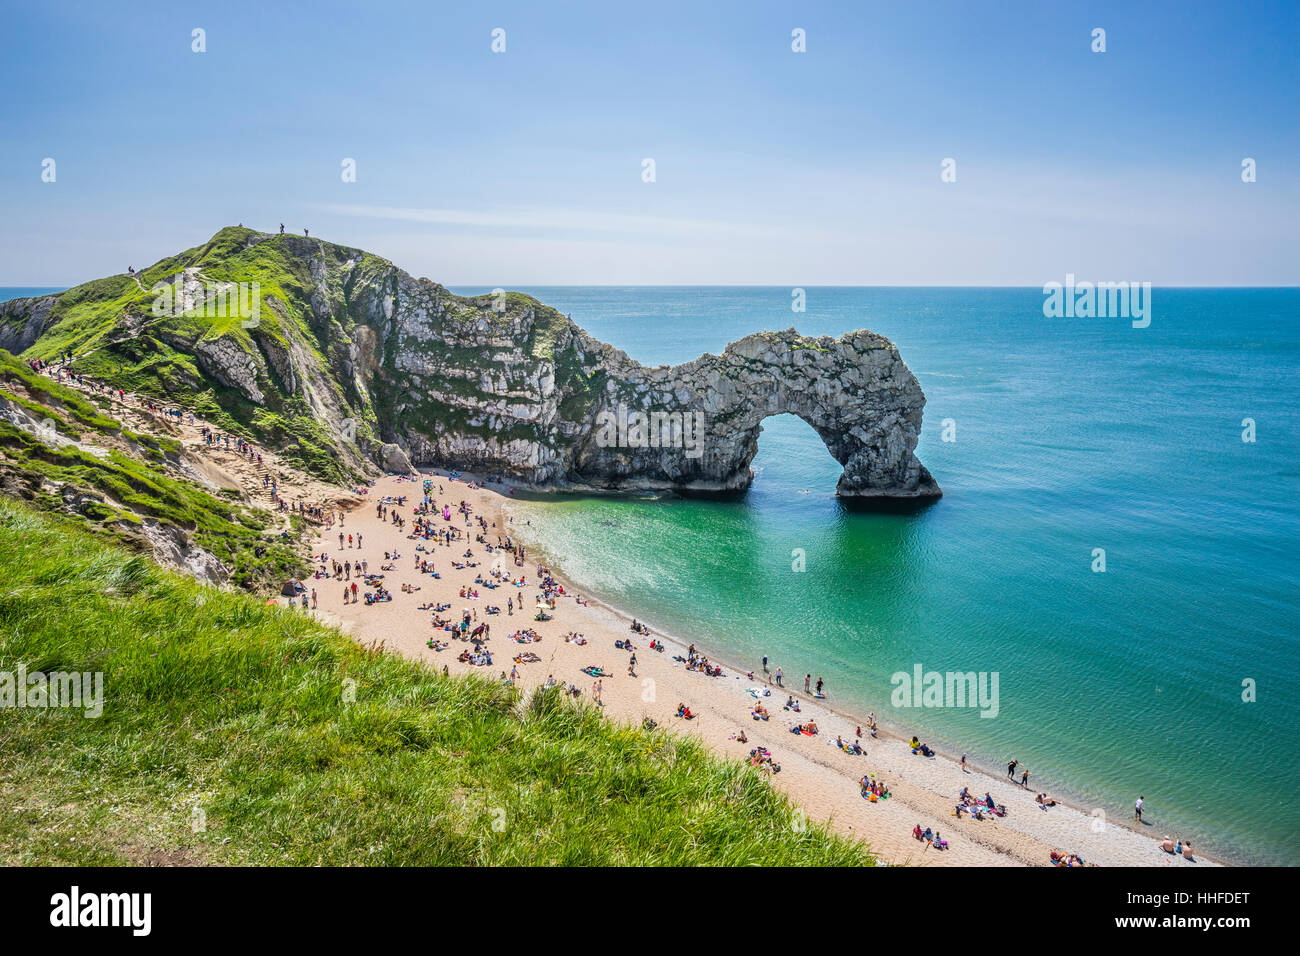 Grande Bretagne, sud-ouest de l'Angleterre, dans le Dorset, Jurassic Coast, l'arche de pierre calcaire naturelle Durdle Door Banque D'Images